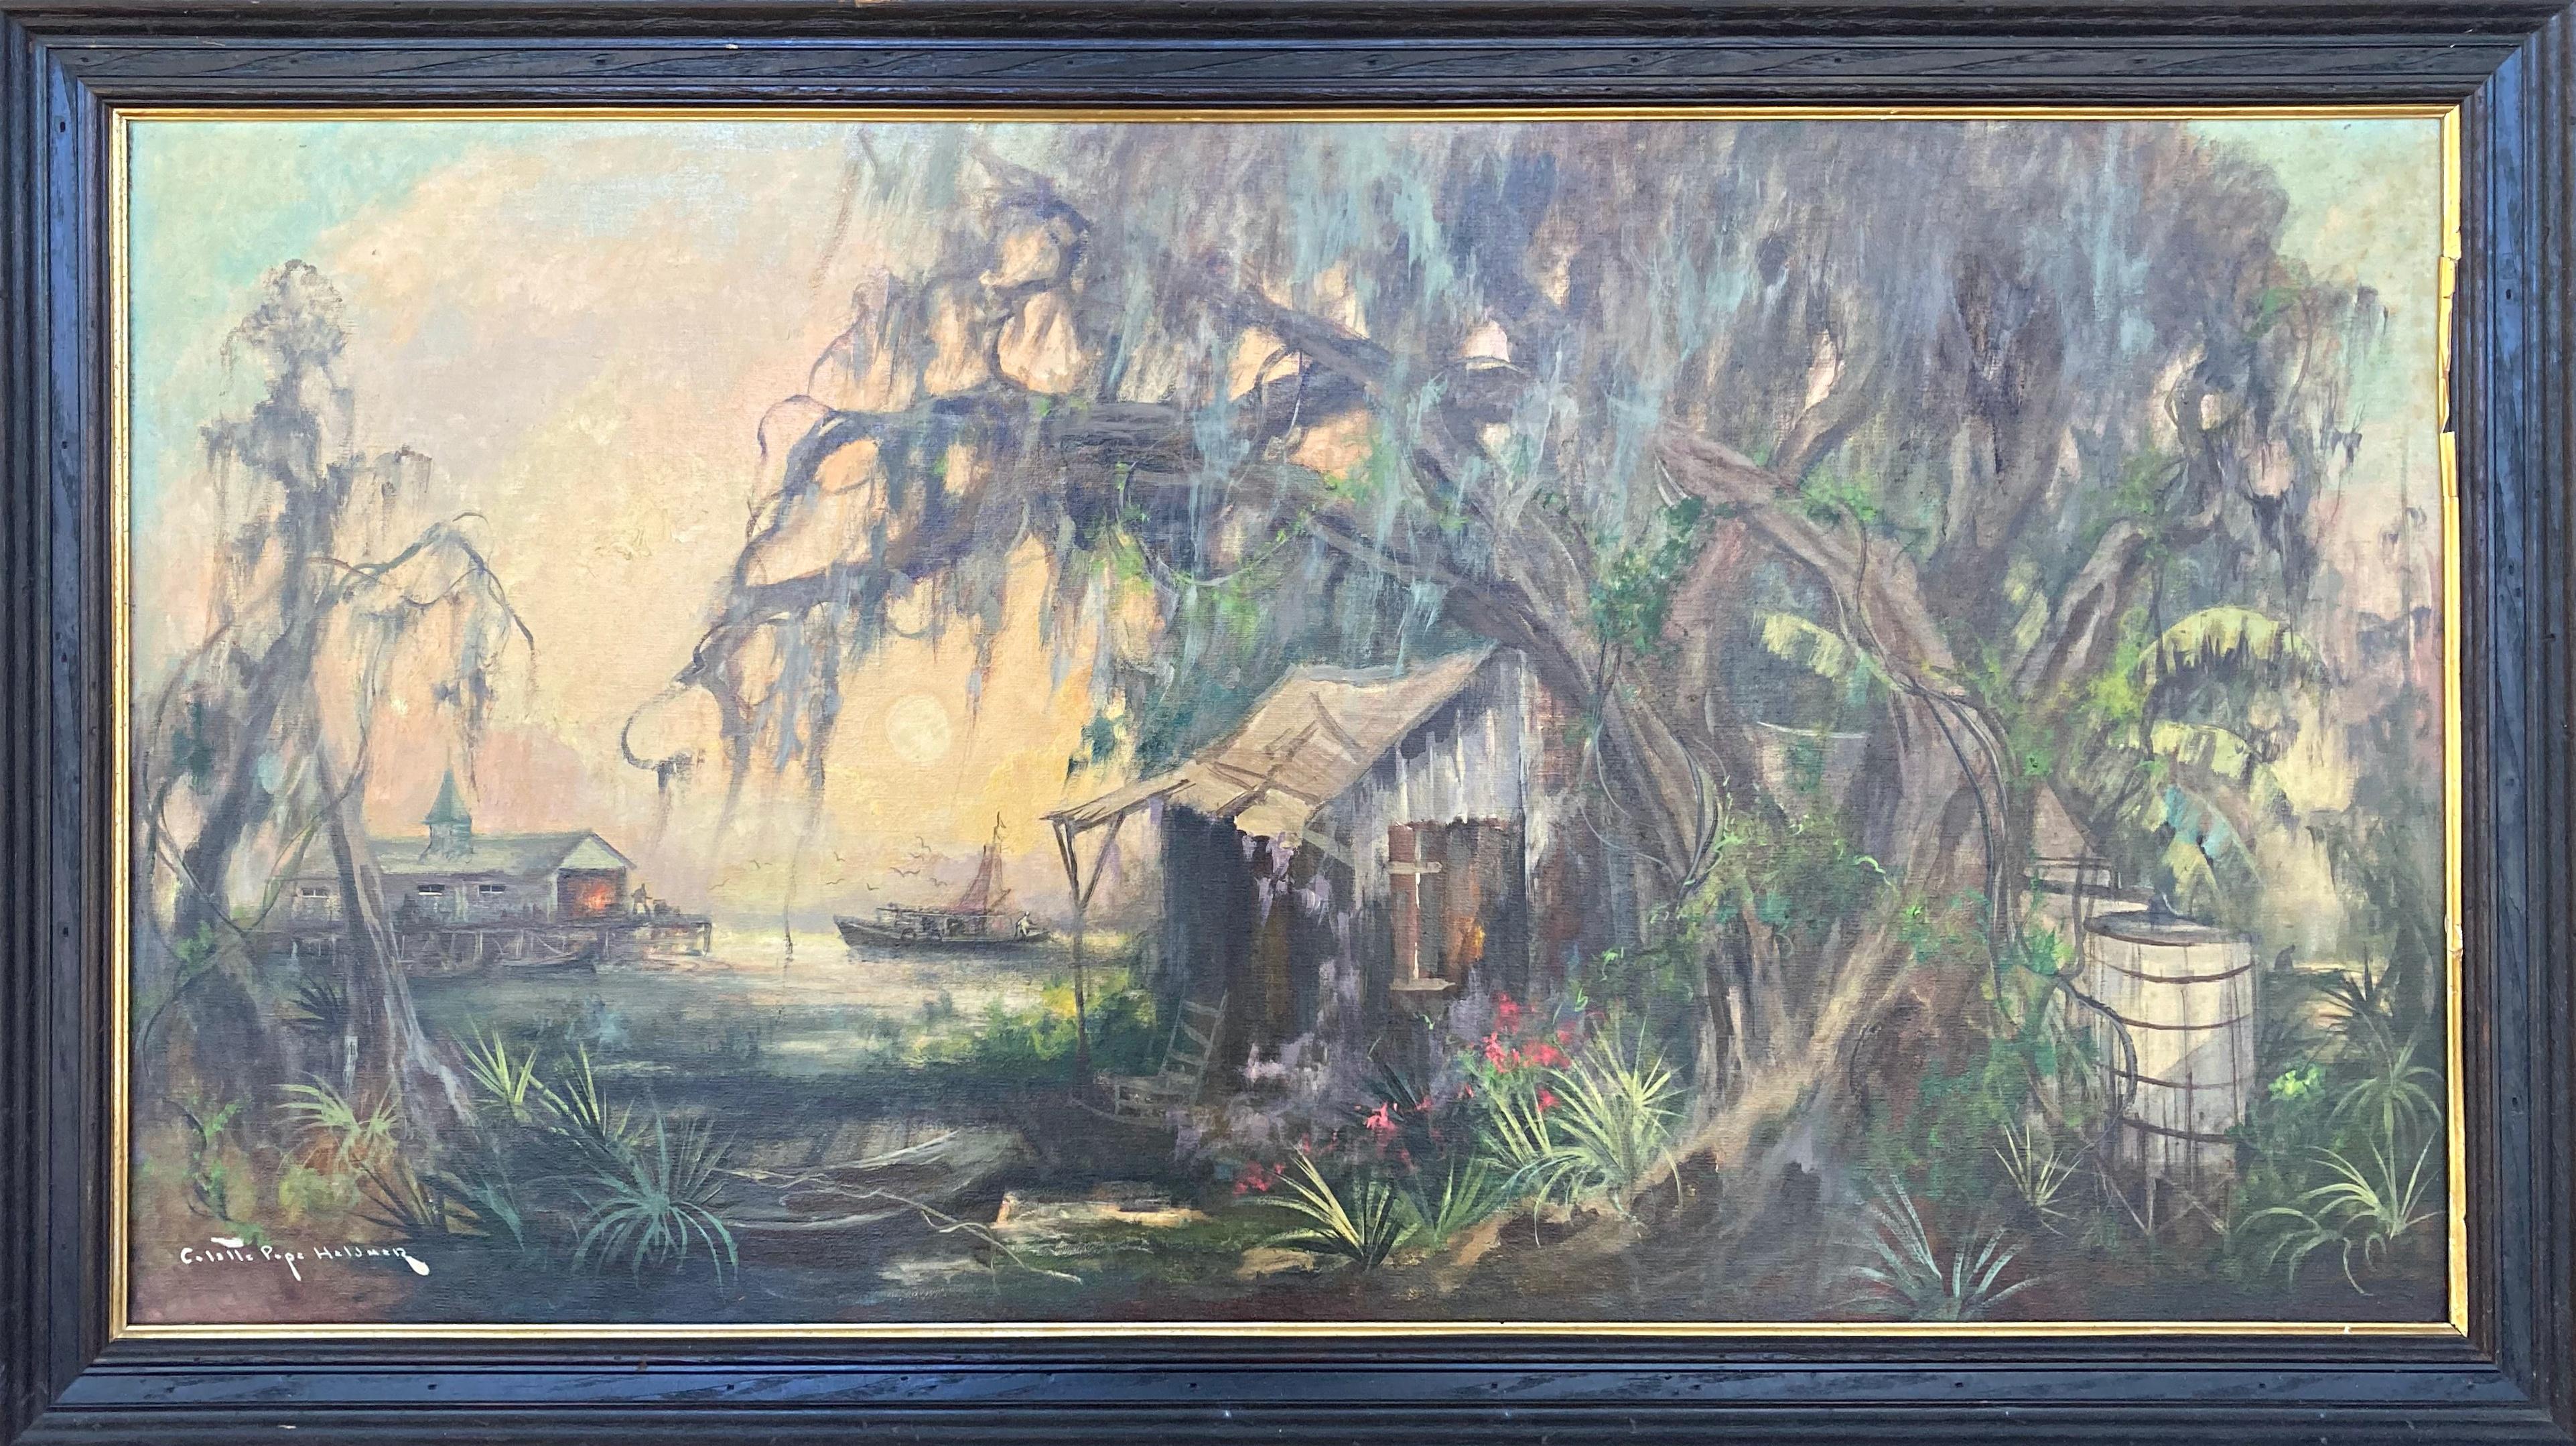 Colette Pope Heldner et son mari Knute Heldner étaient des peintres légendaires de la Nouvelle-Orléans, surtout connus pour ces scènes de marais emblématiques du sud de la Louisiane. Leurs couleurs vives et leurs coups de pinceau expressionnistes